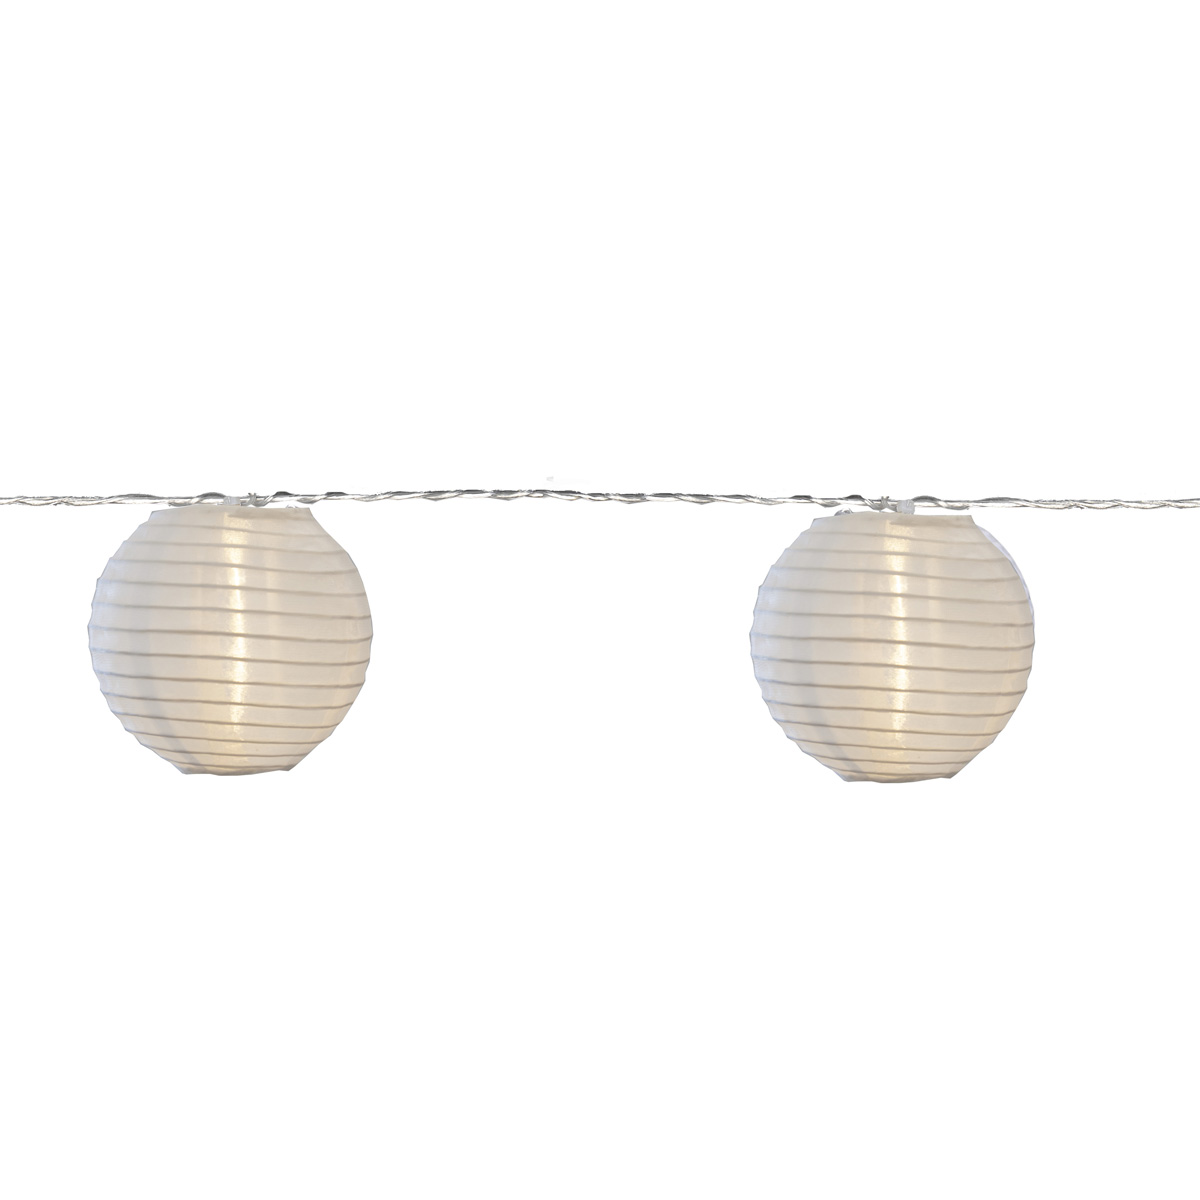 LED Lichterkette "Festival" - 10 weiße Lampions mit warmweißen LED - 4,5m - inkl. Trafo - 10m Kabel